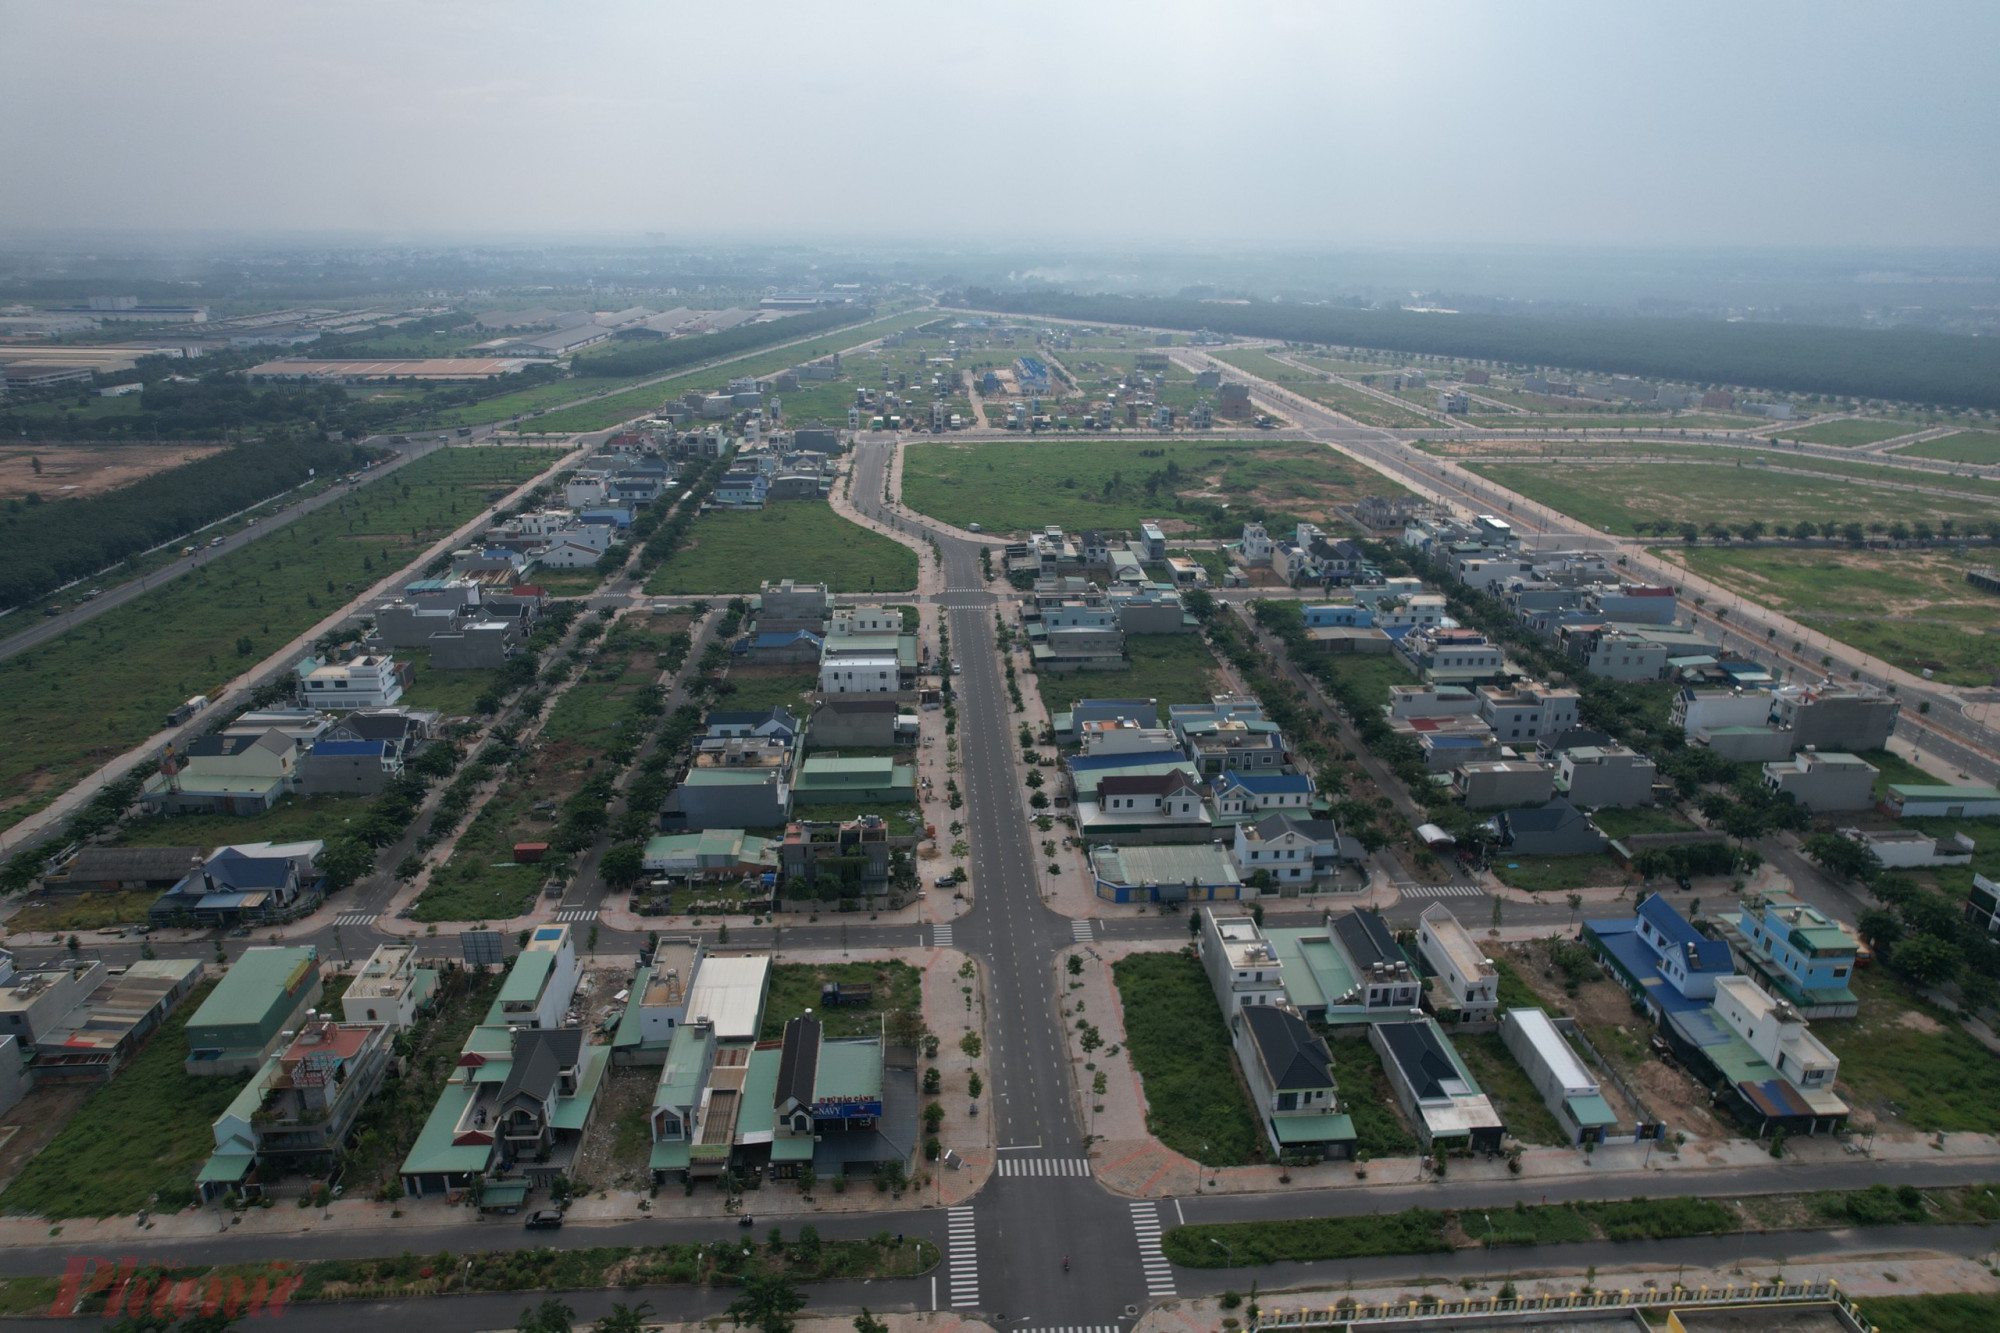 Khu tái định cư Lộc An - Bình Sơn được kỳ vọng trong tương lai sẽ trở thành một siêu đô thị nằm kế bên sân bay Long Thành, làm thay đổi hoàn toàn bộ mặt cuộc sống người dân nơi đây. 